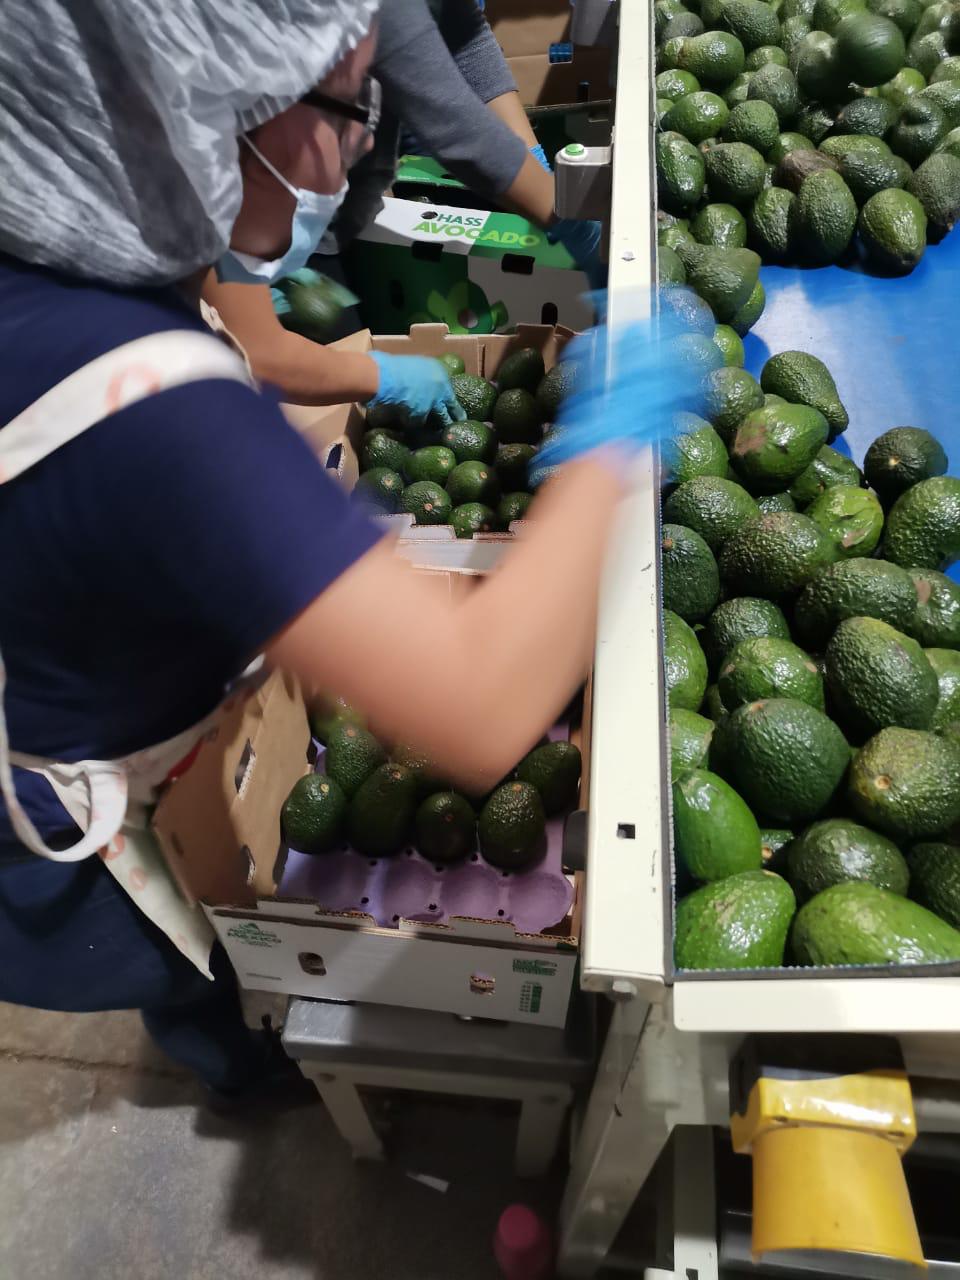 USA Market – Our 2021 avocado export season moves forward